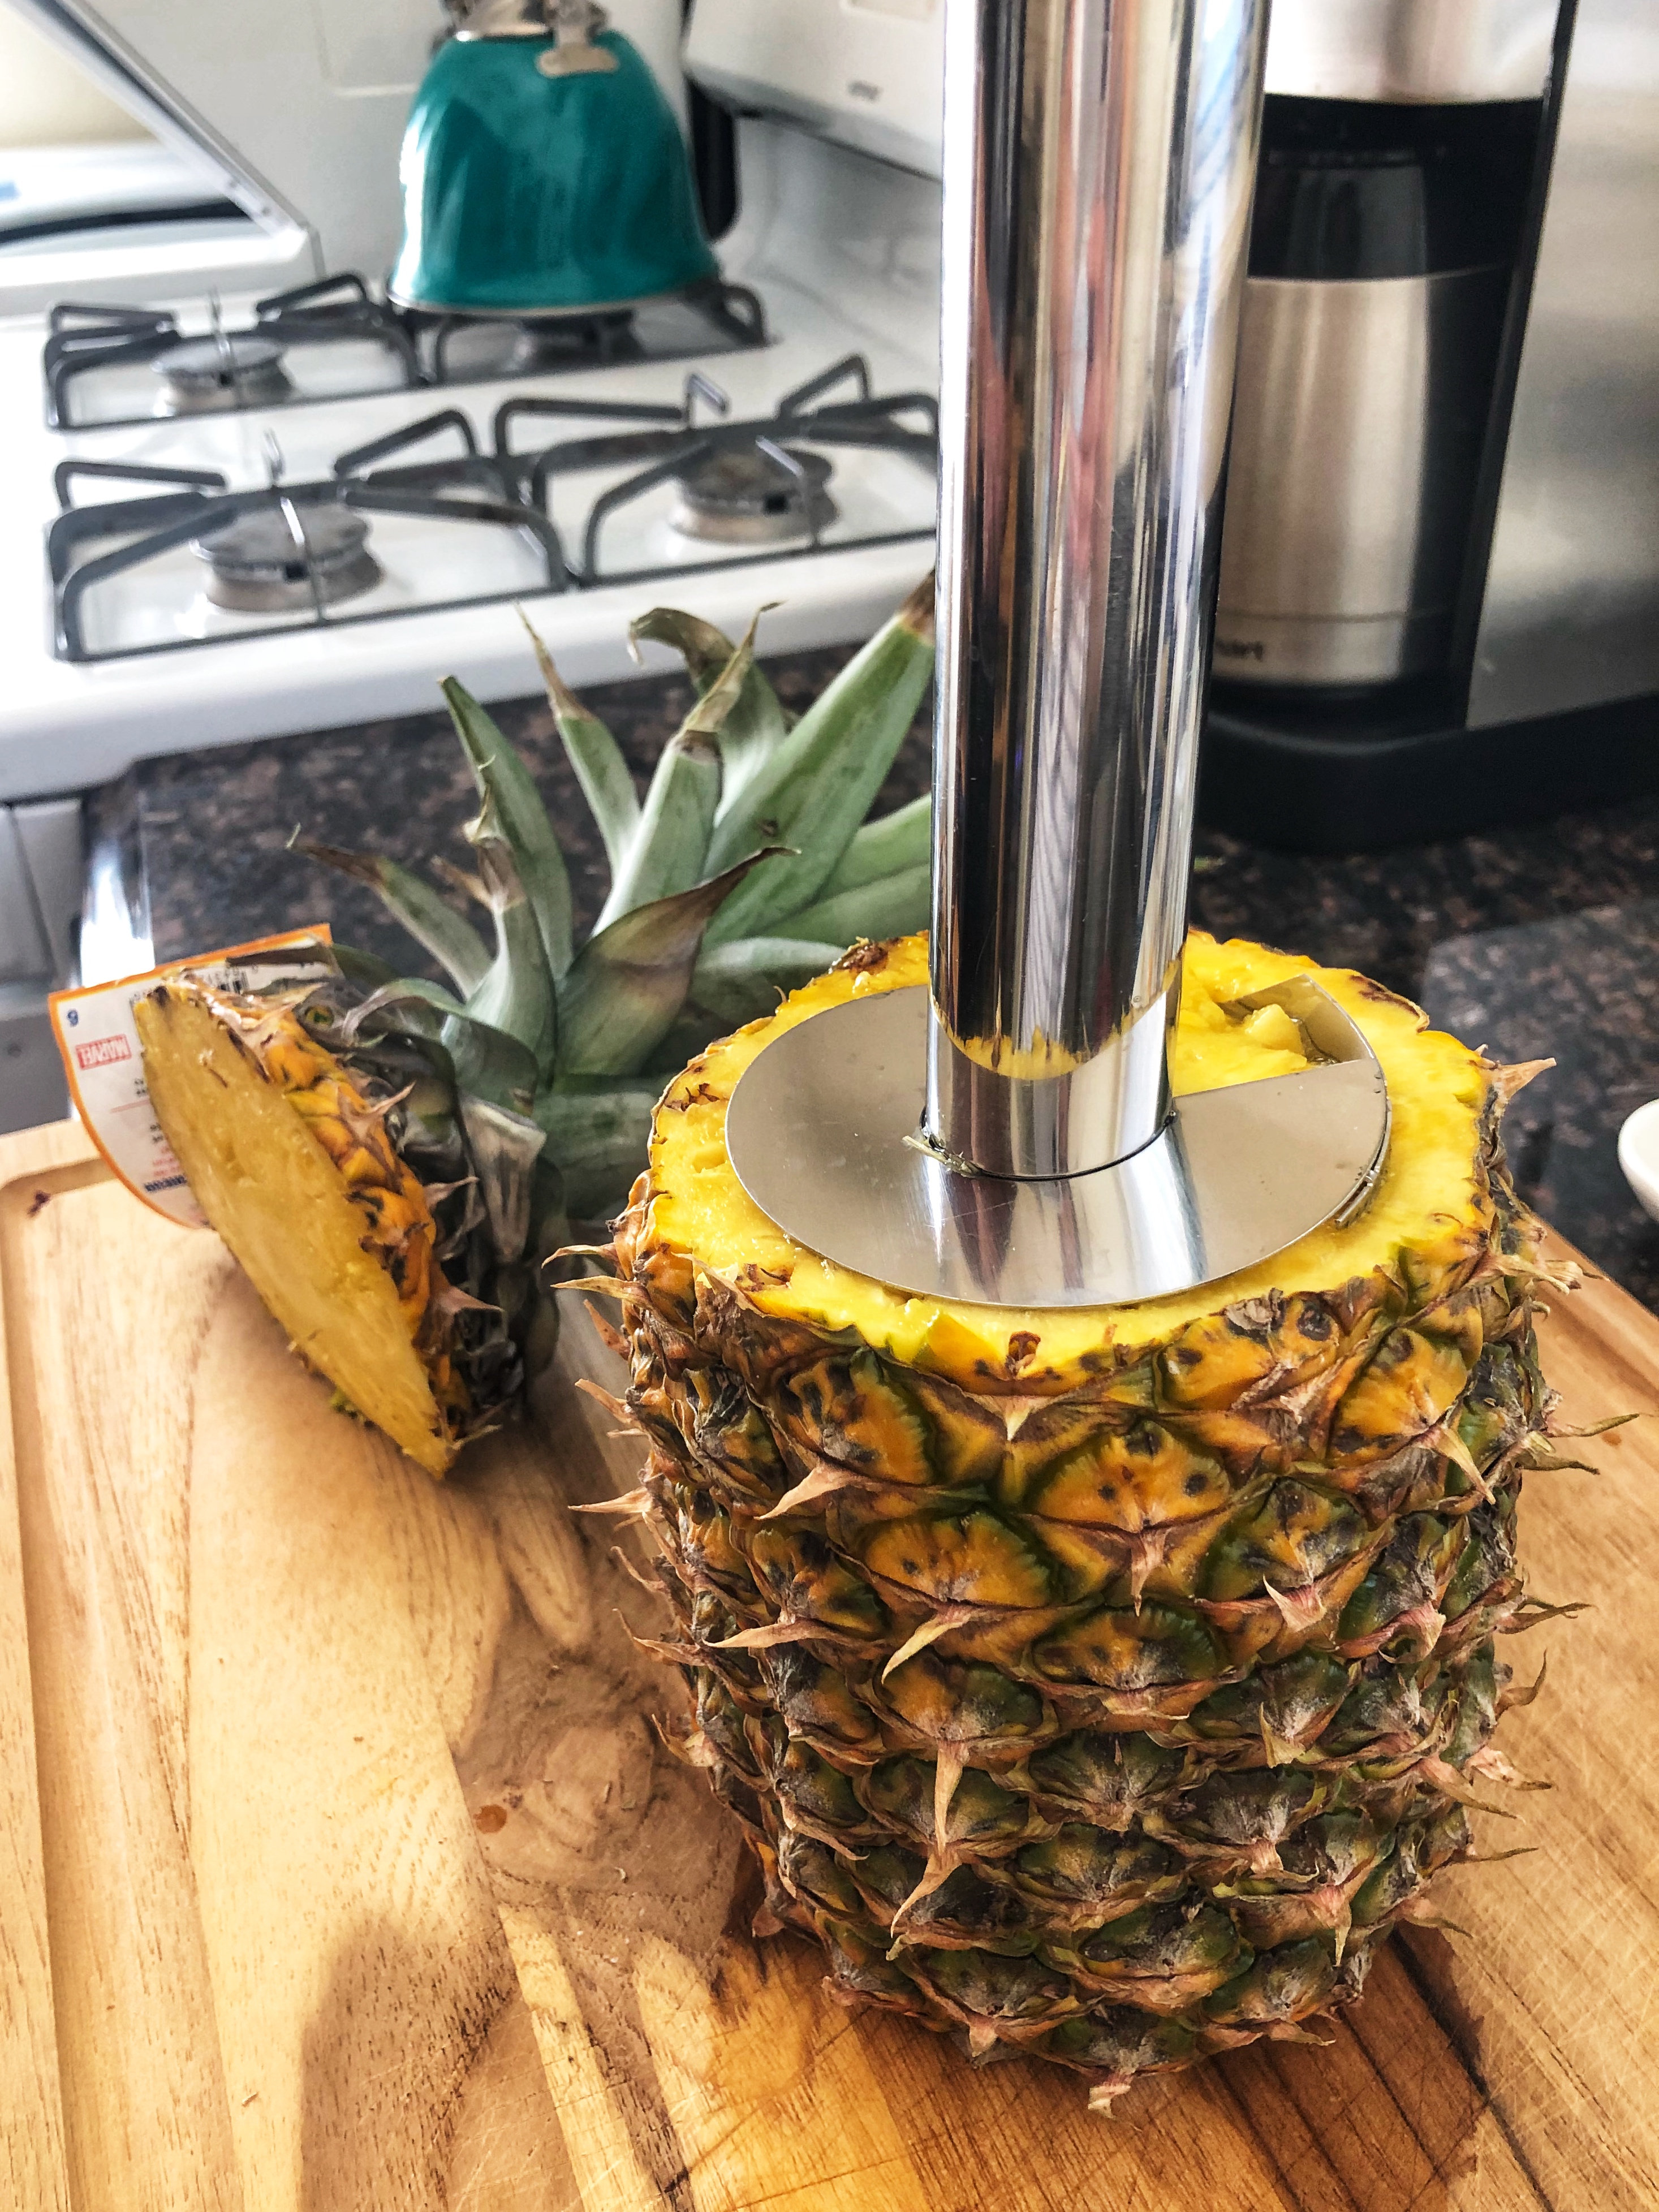 Pineapple corer